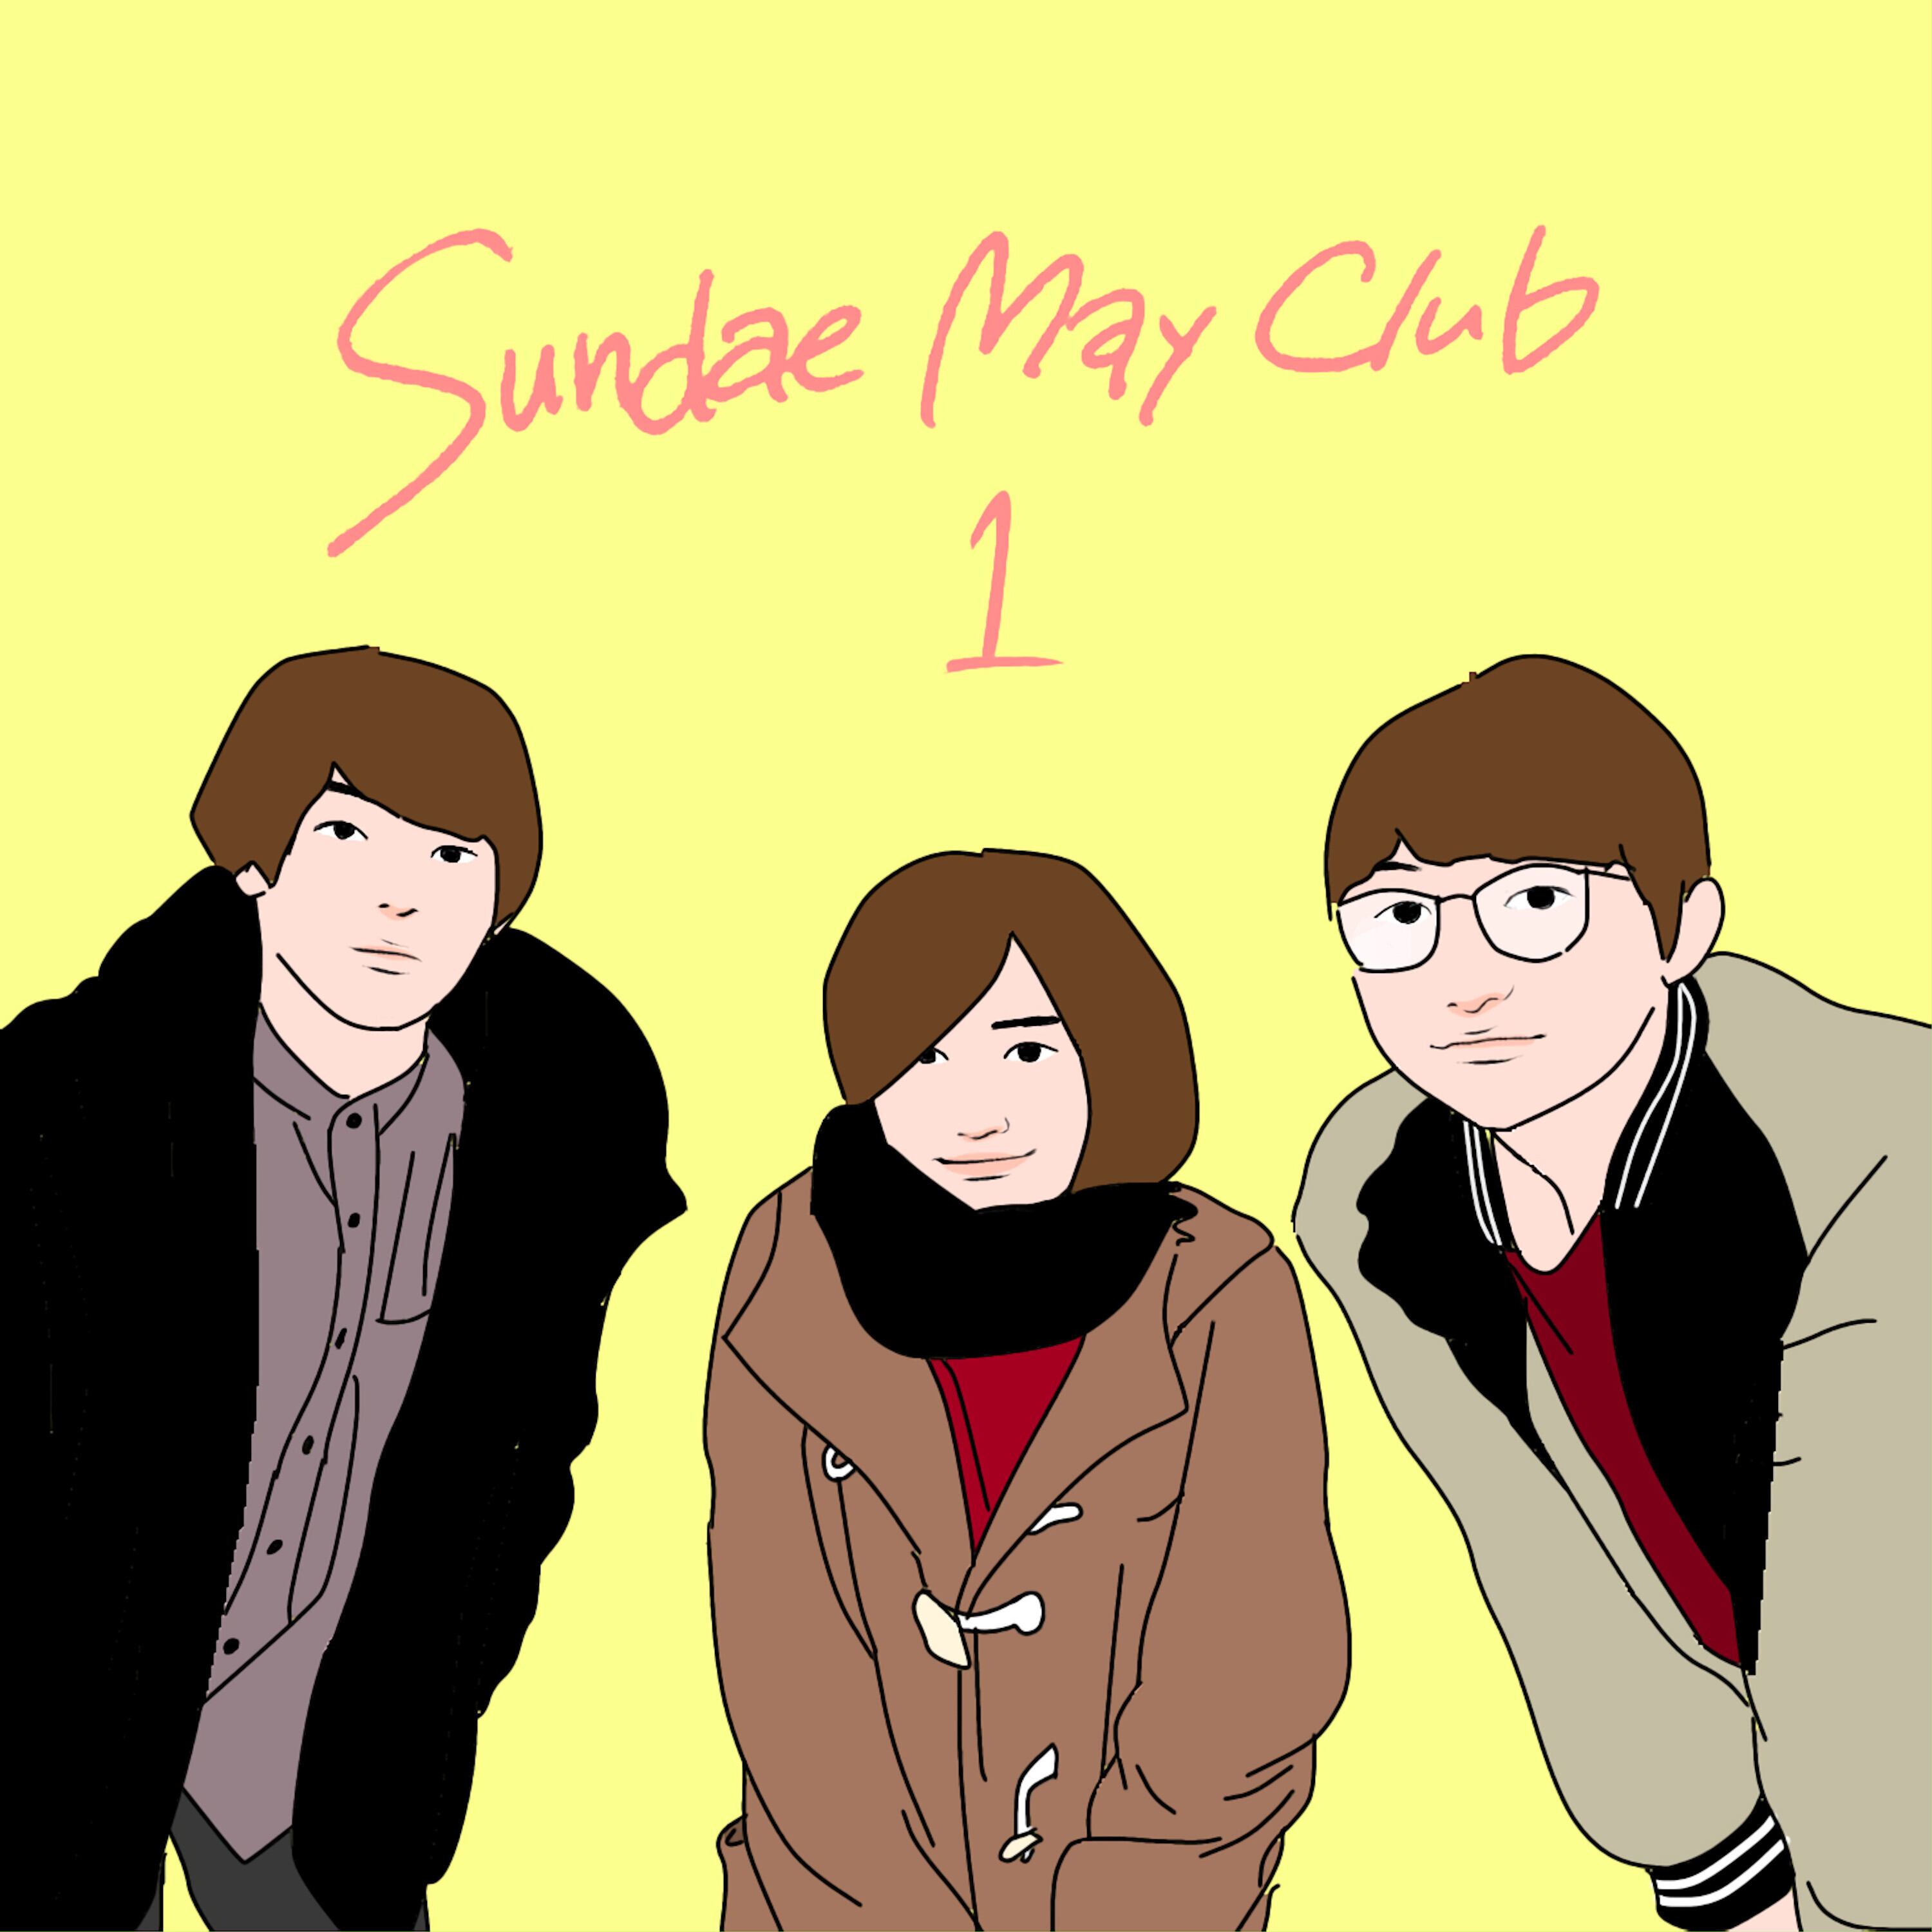 Sundae May Club 1st EP Sundae May Club 1